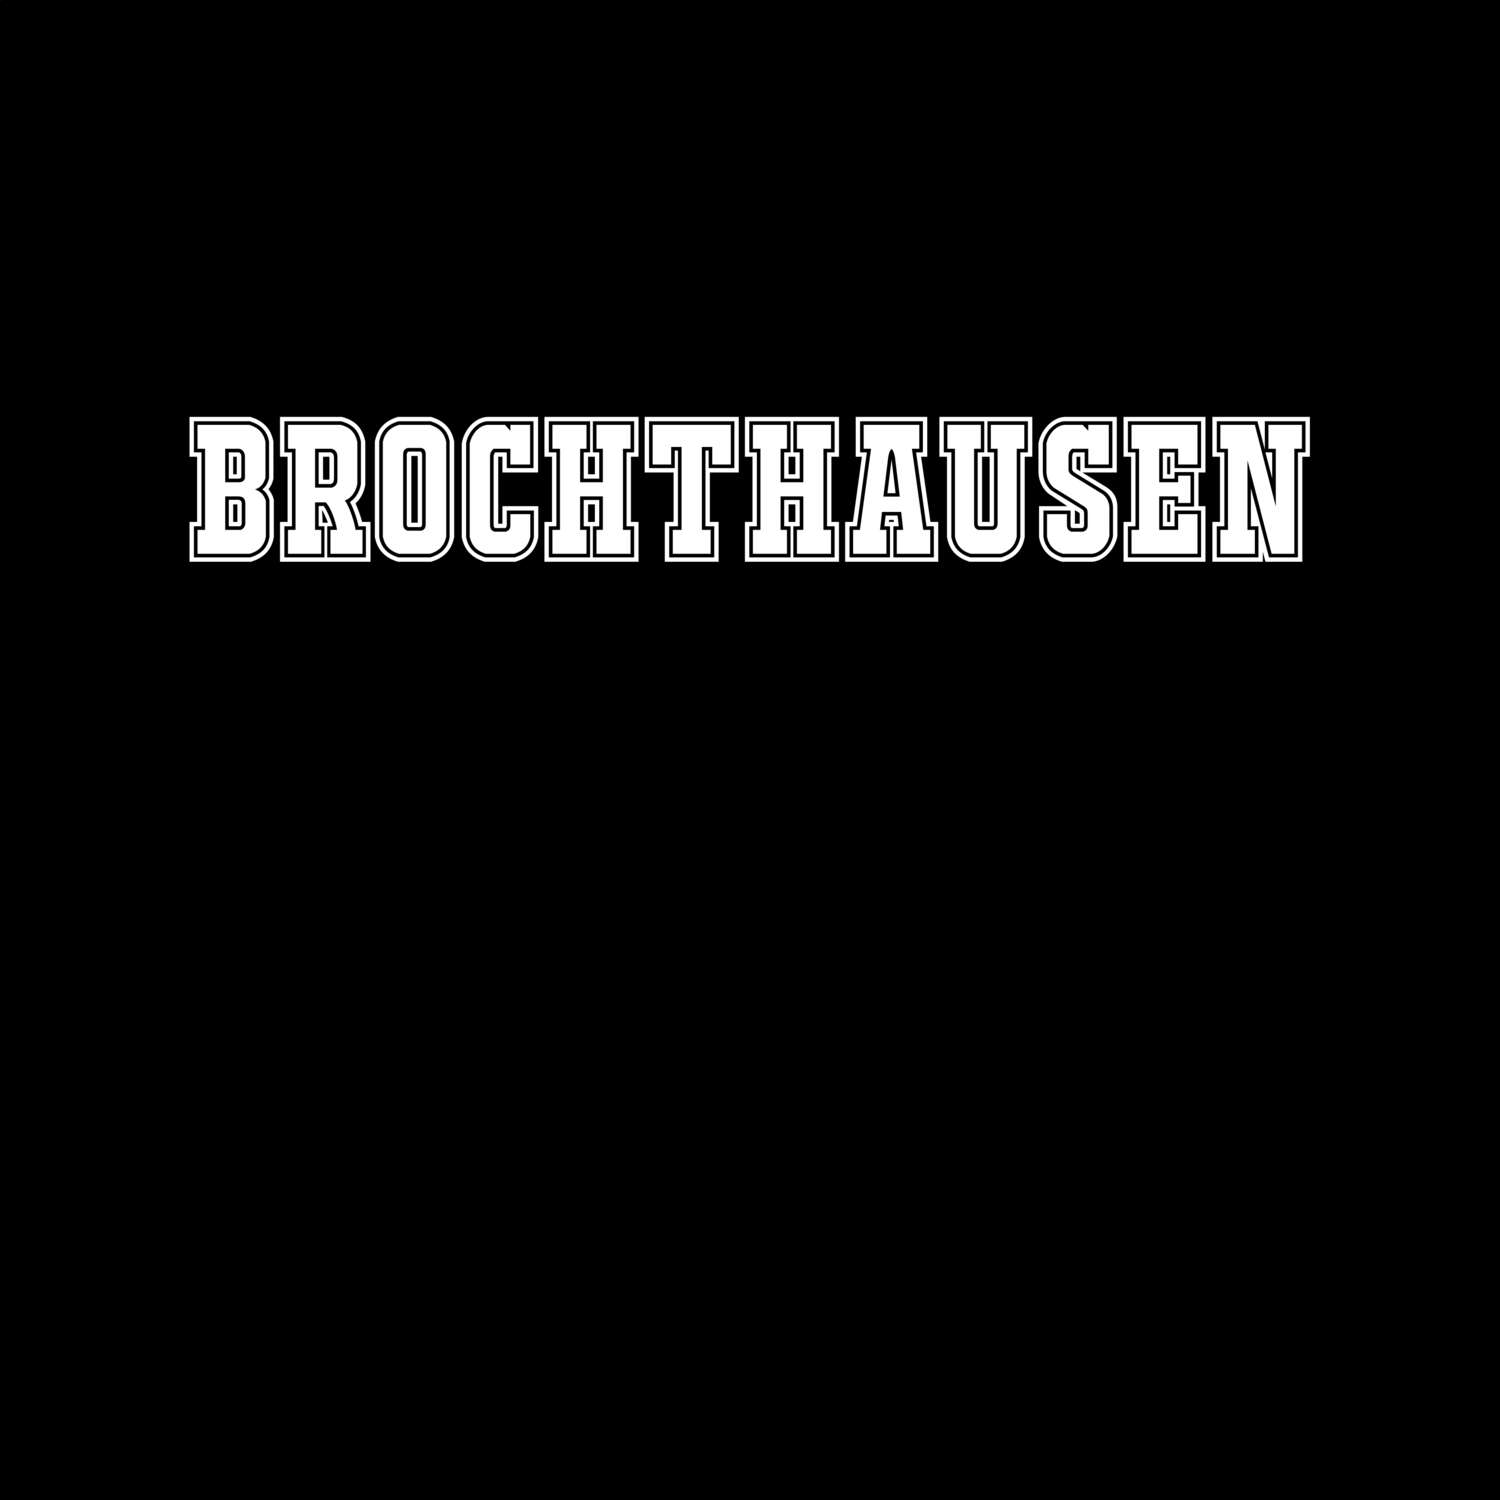 Brochthausen T-Shirt »Classic«